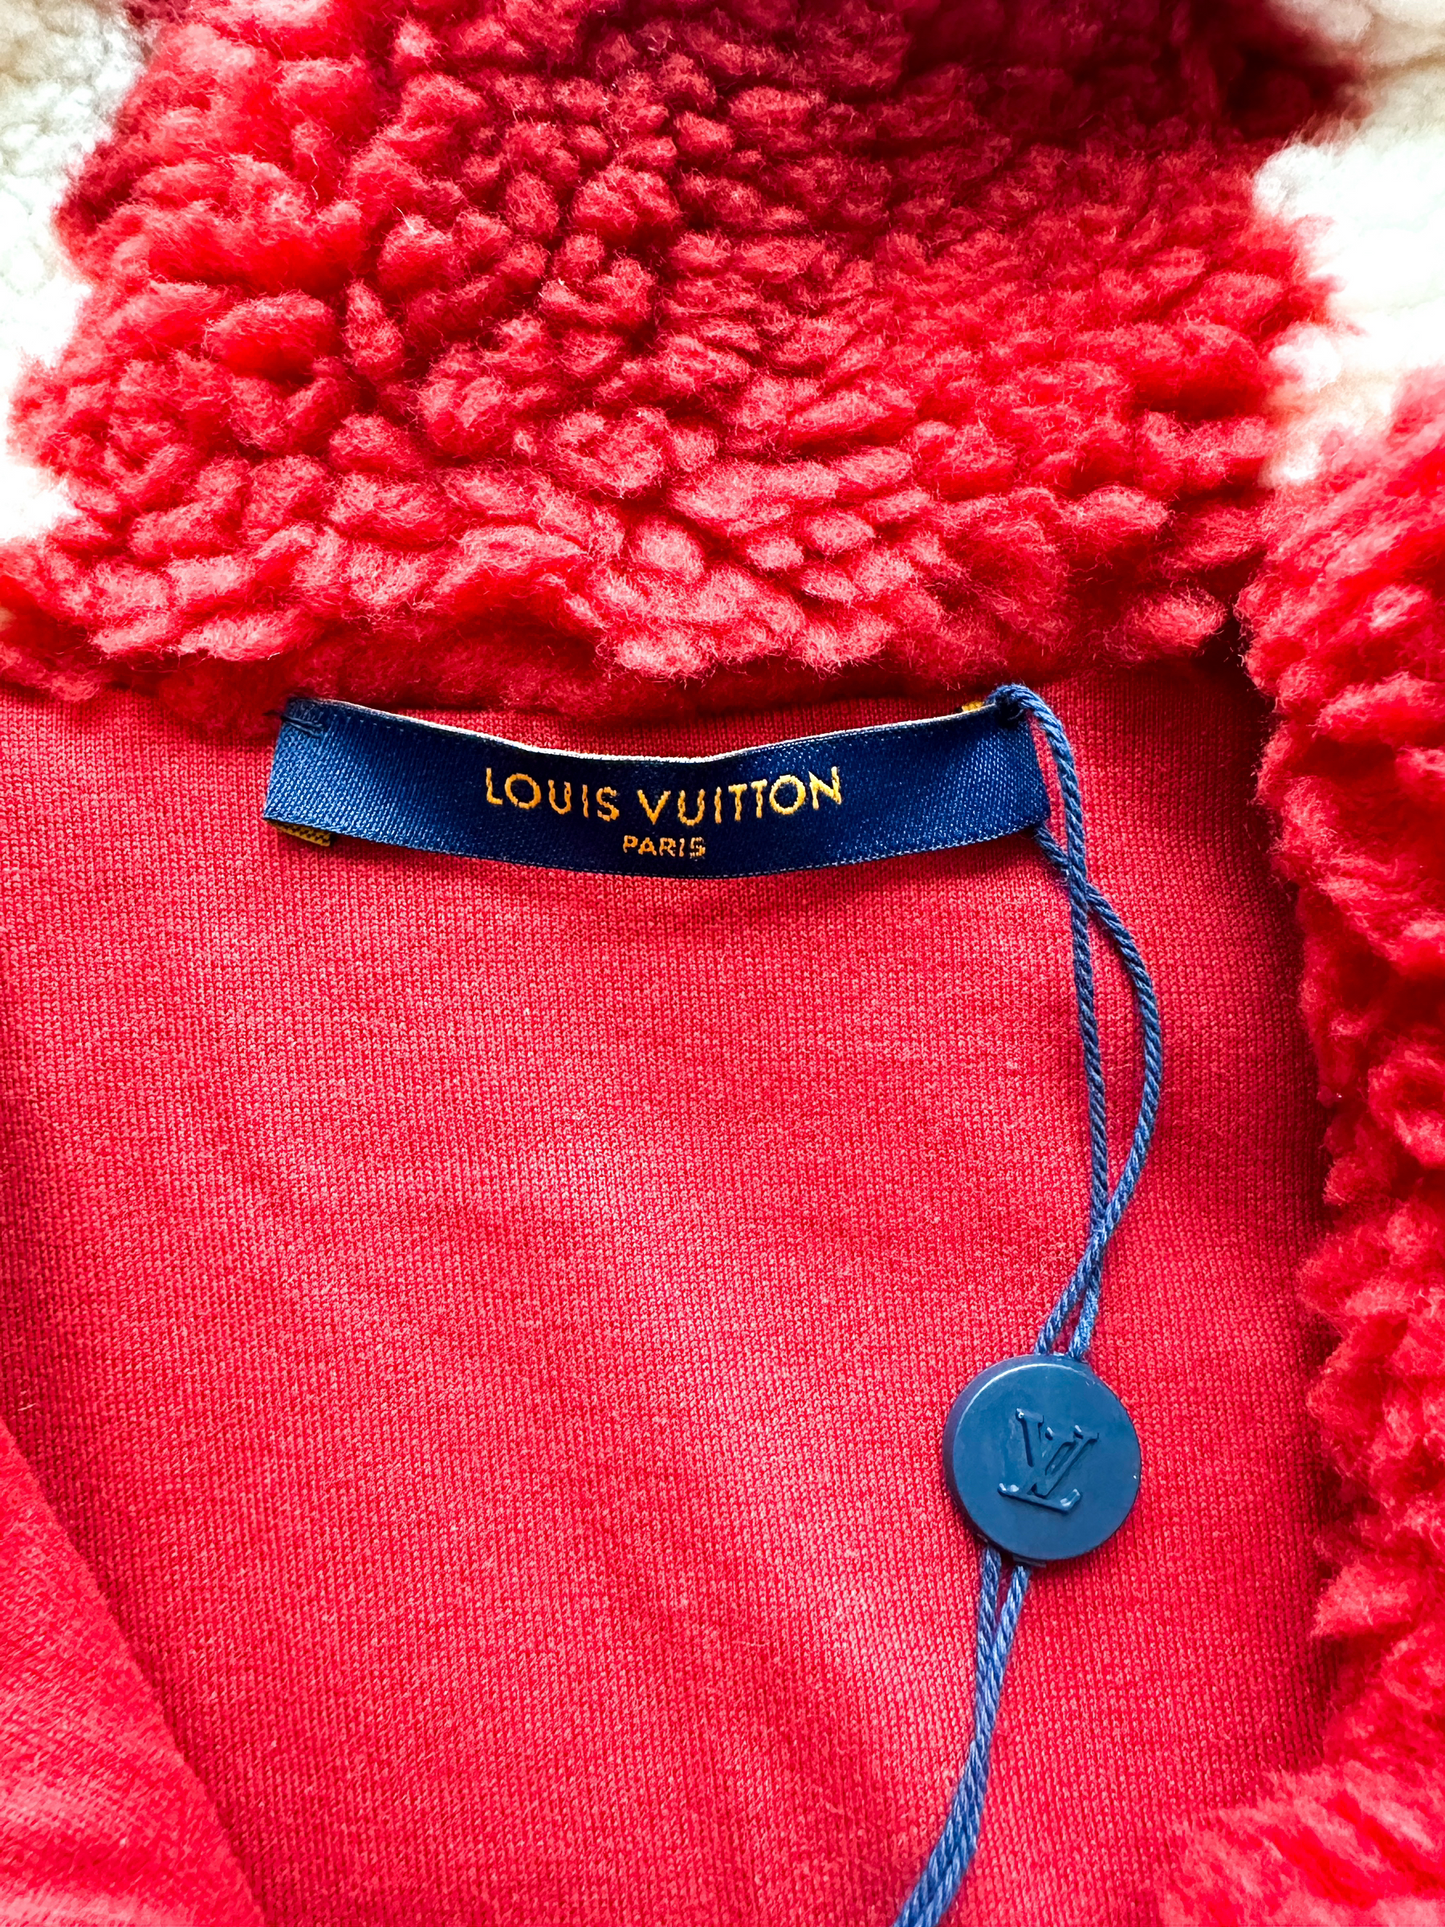 Louis Vuitton, Jackets & Coats, Louis Vuitton Mink Jacket Reversible